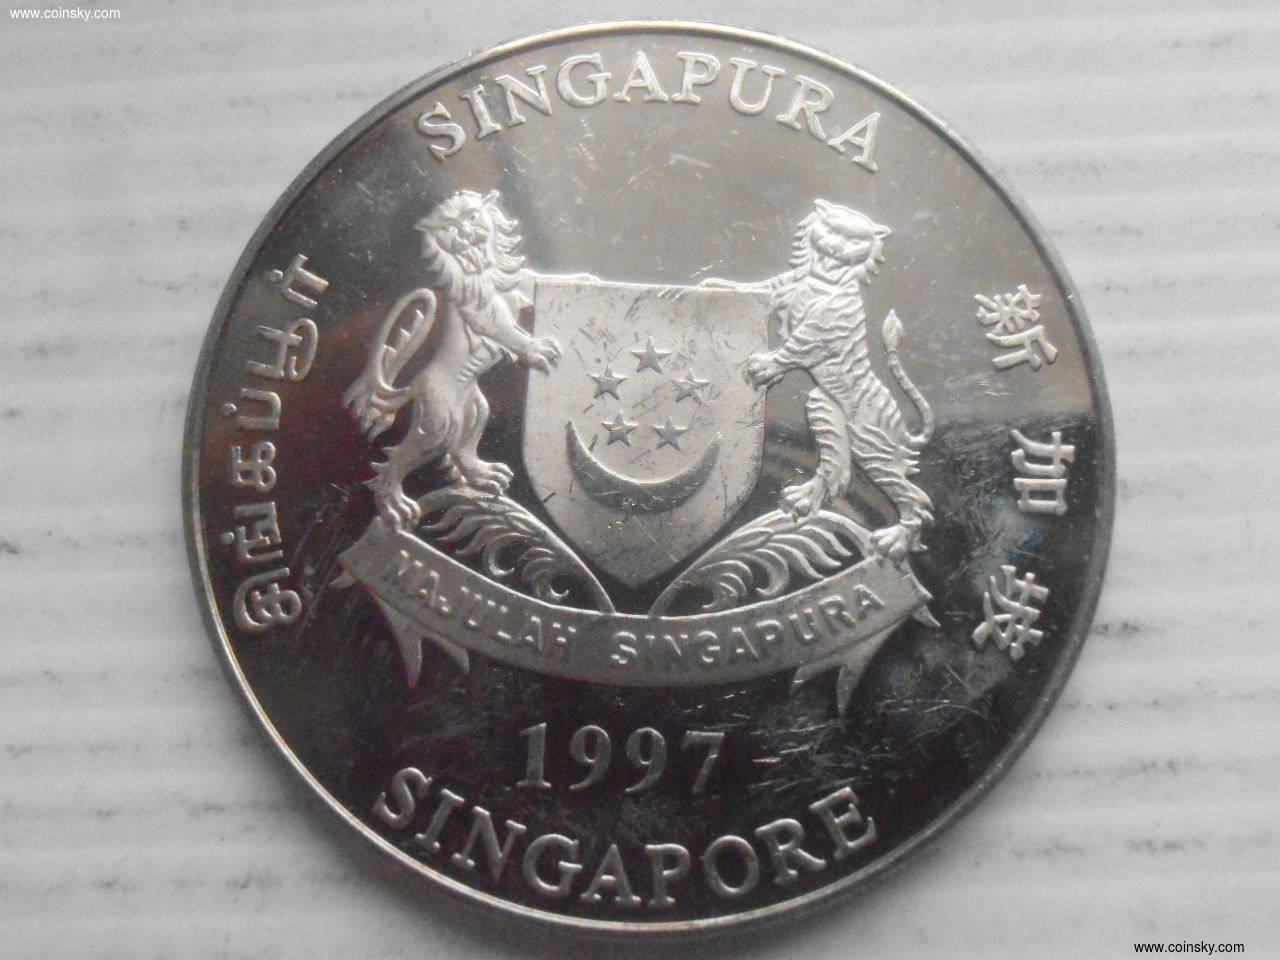 新加坡限量版纪念币图片